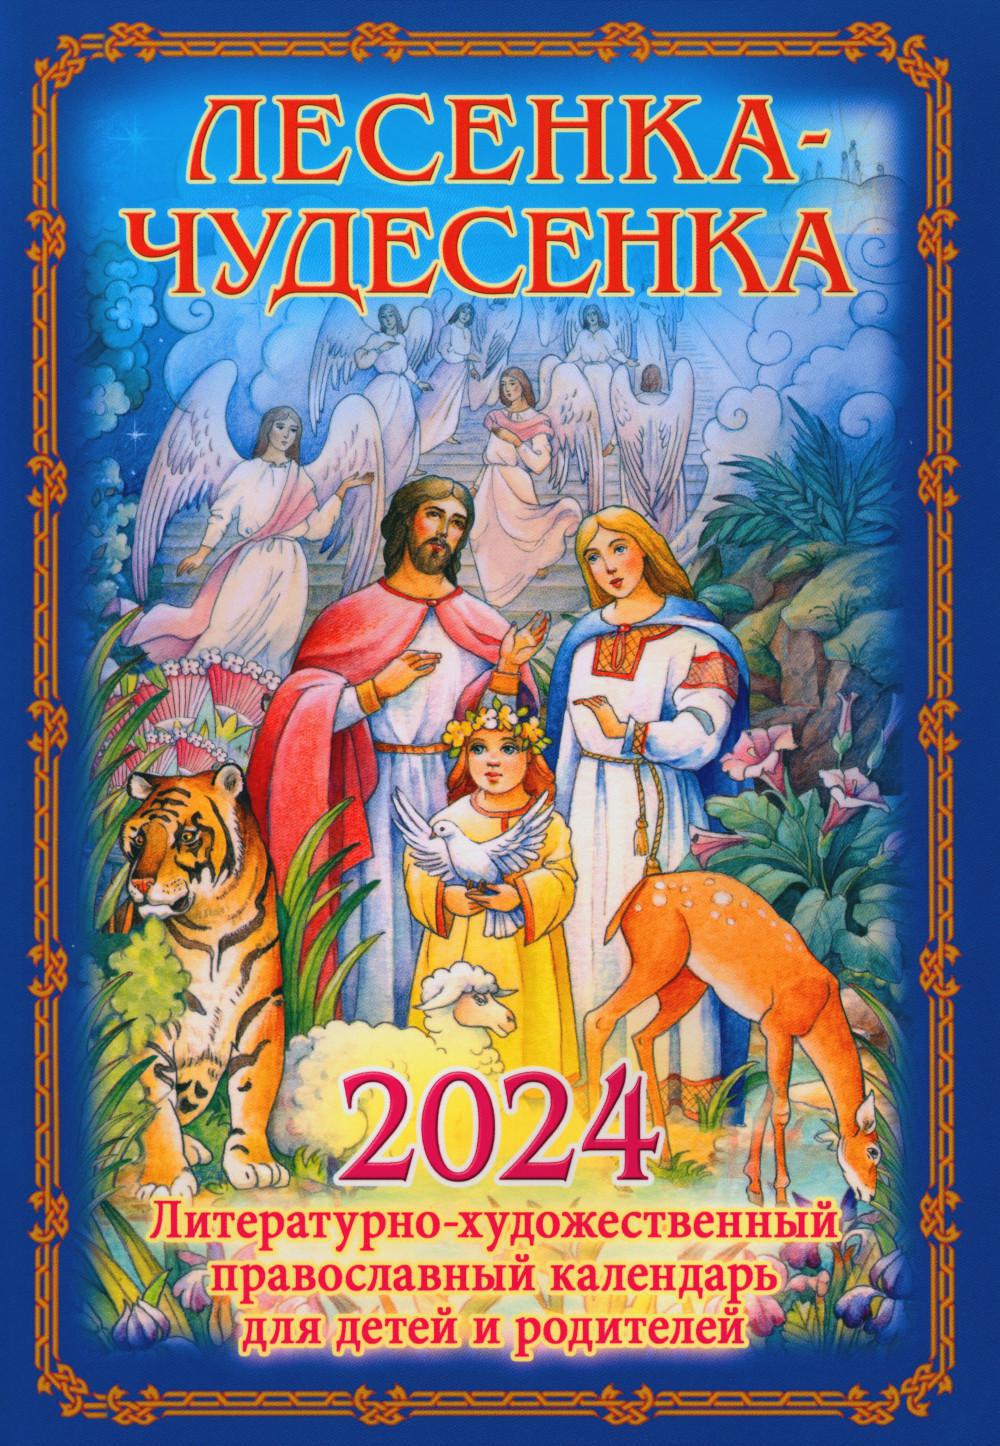 Лесенка-чудесенка: литературно-художественный православный календарь для детей и родителей на 2024 г.